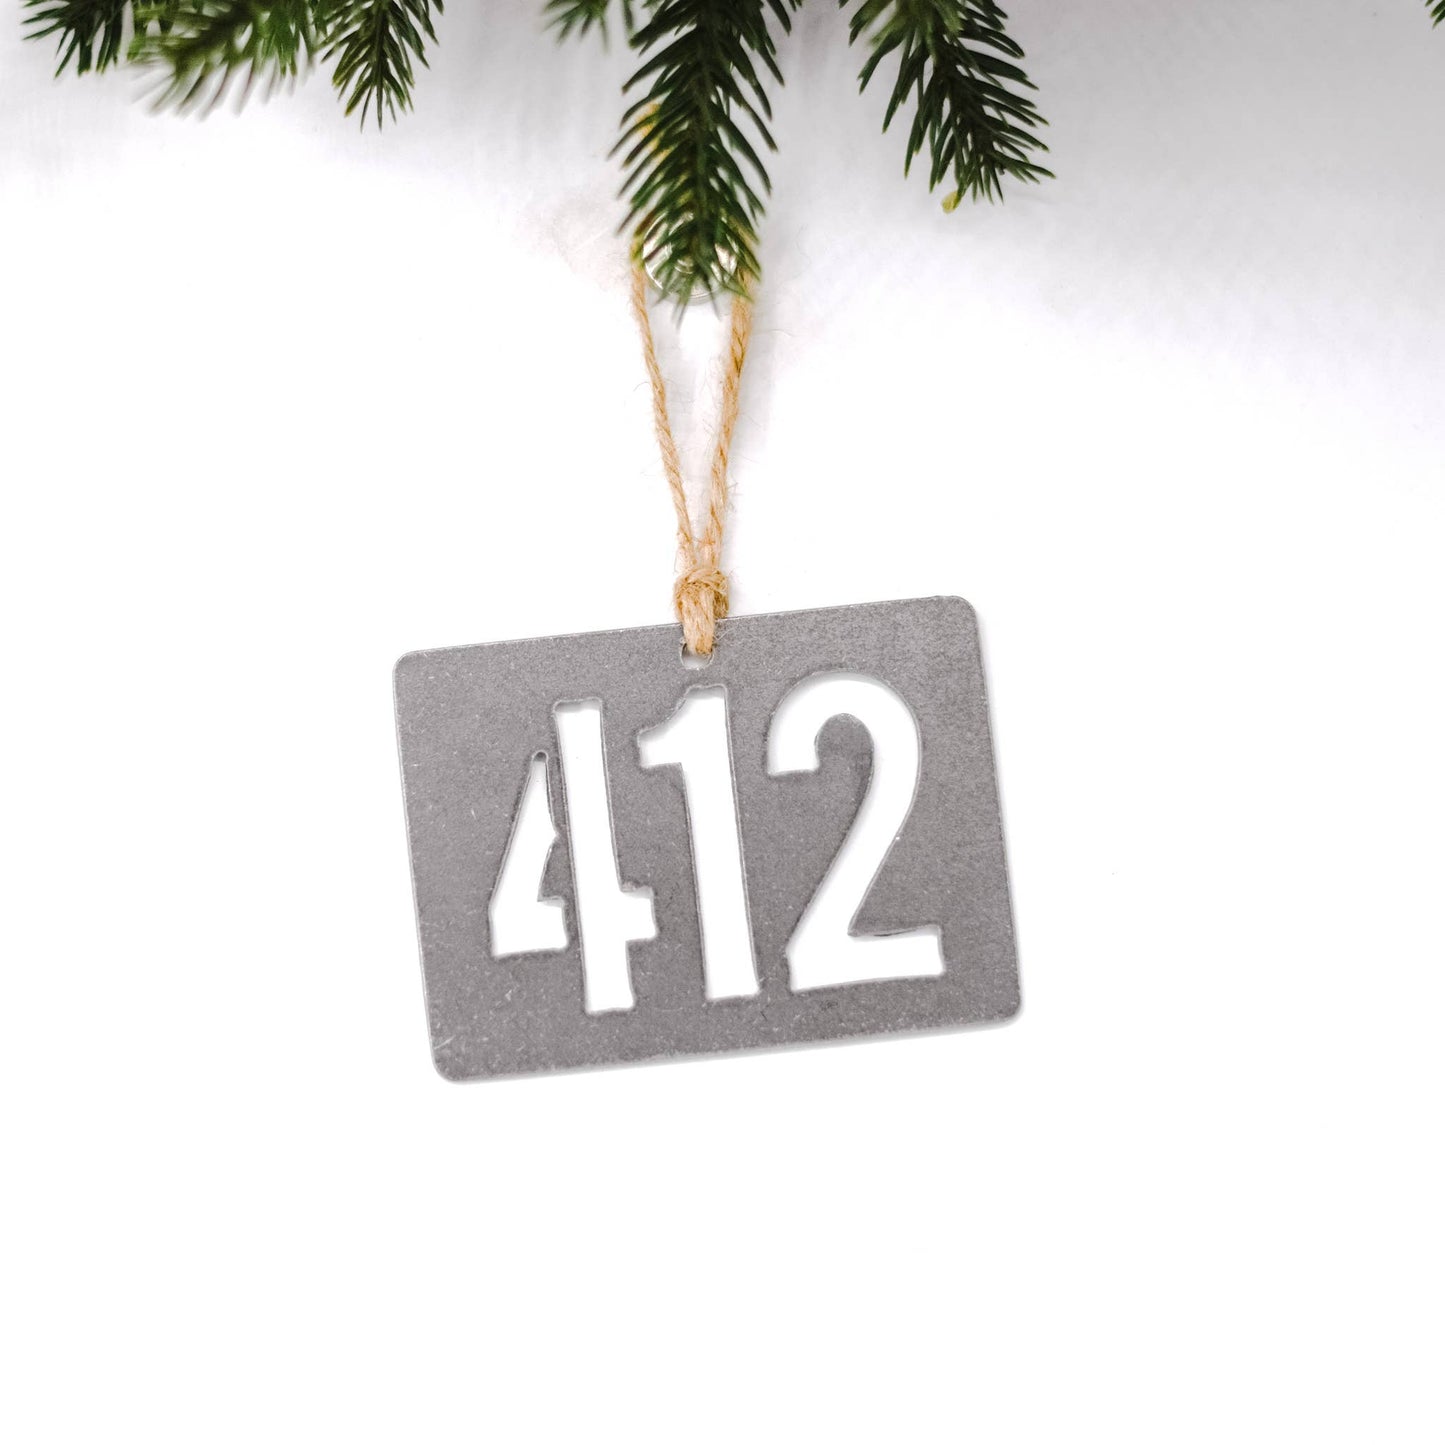 724 Area Code Ornament